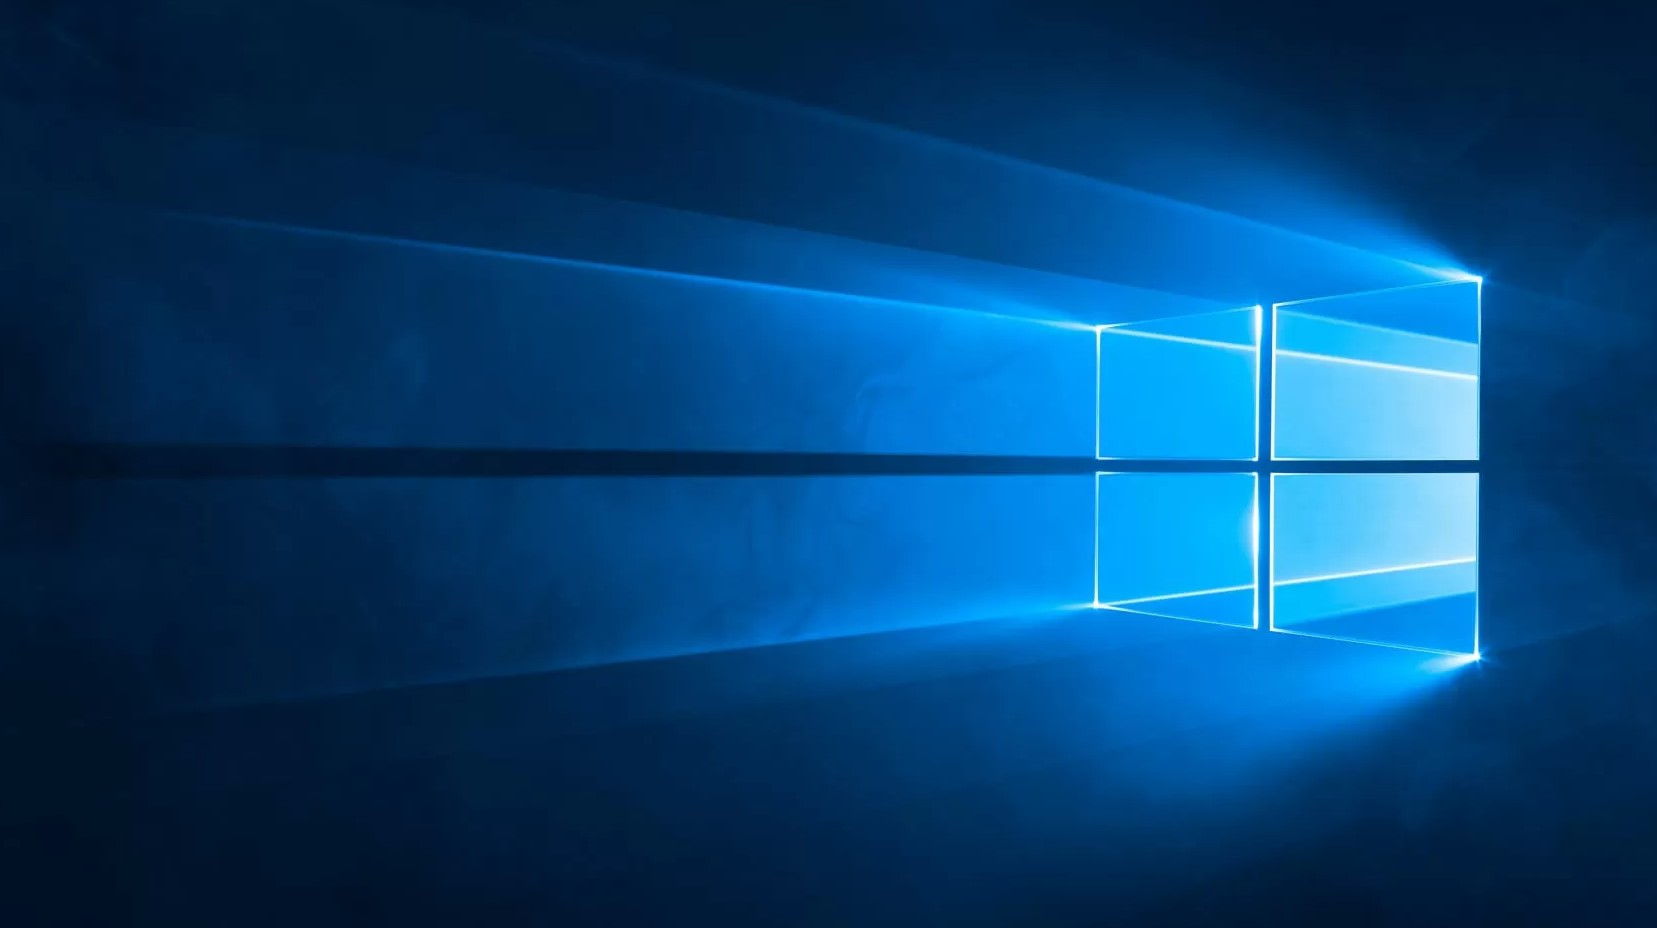 windows-10-cihazlari-kullaniciya-gore-optimize-edecek-technopat-1.jpg